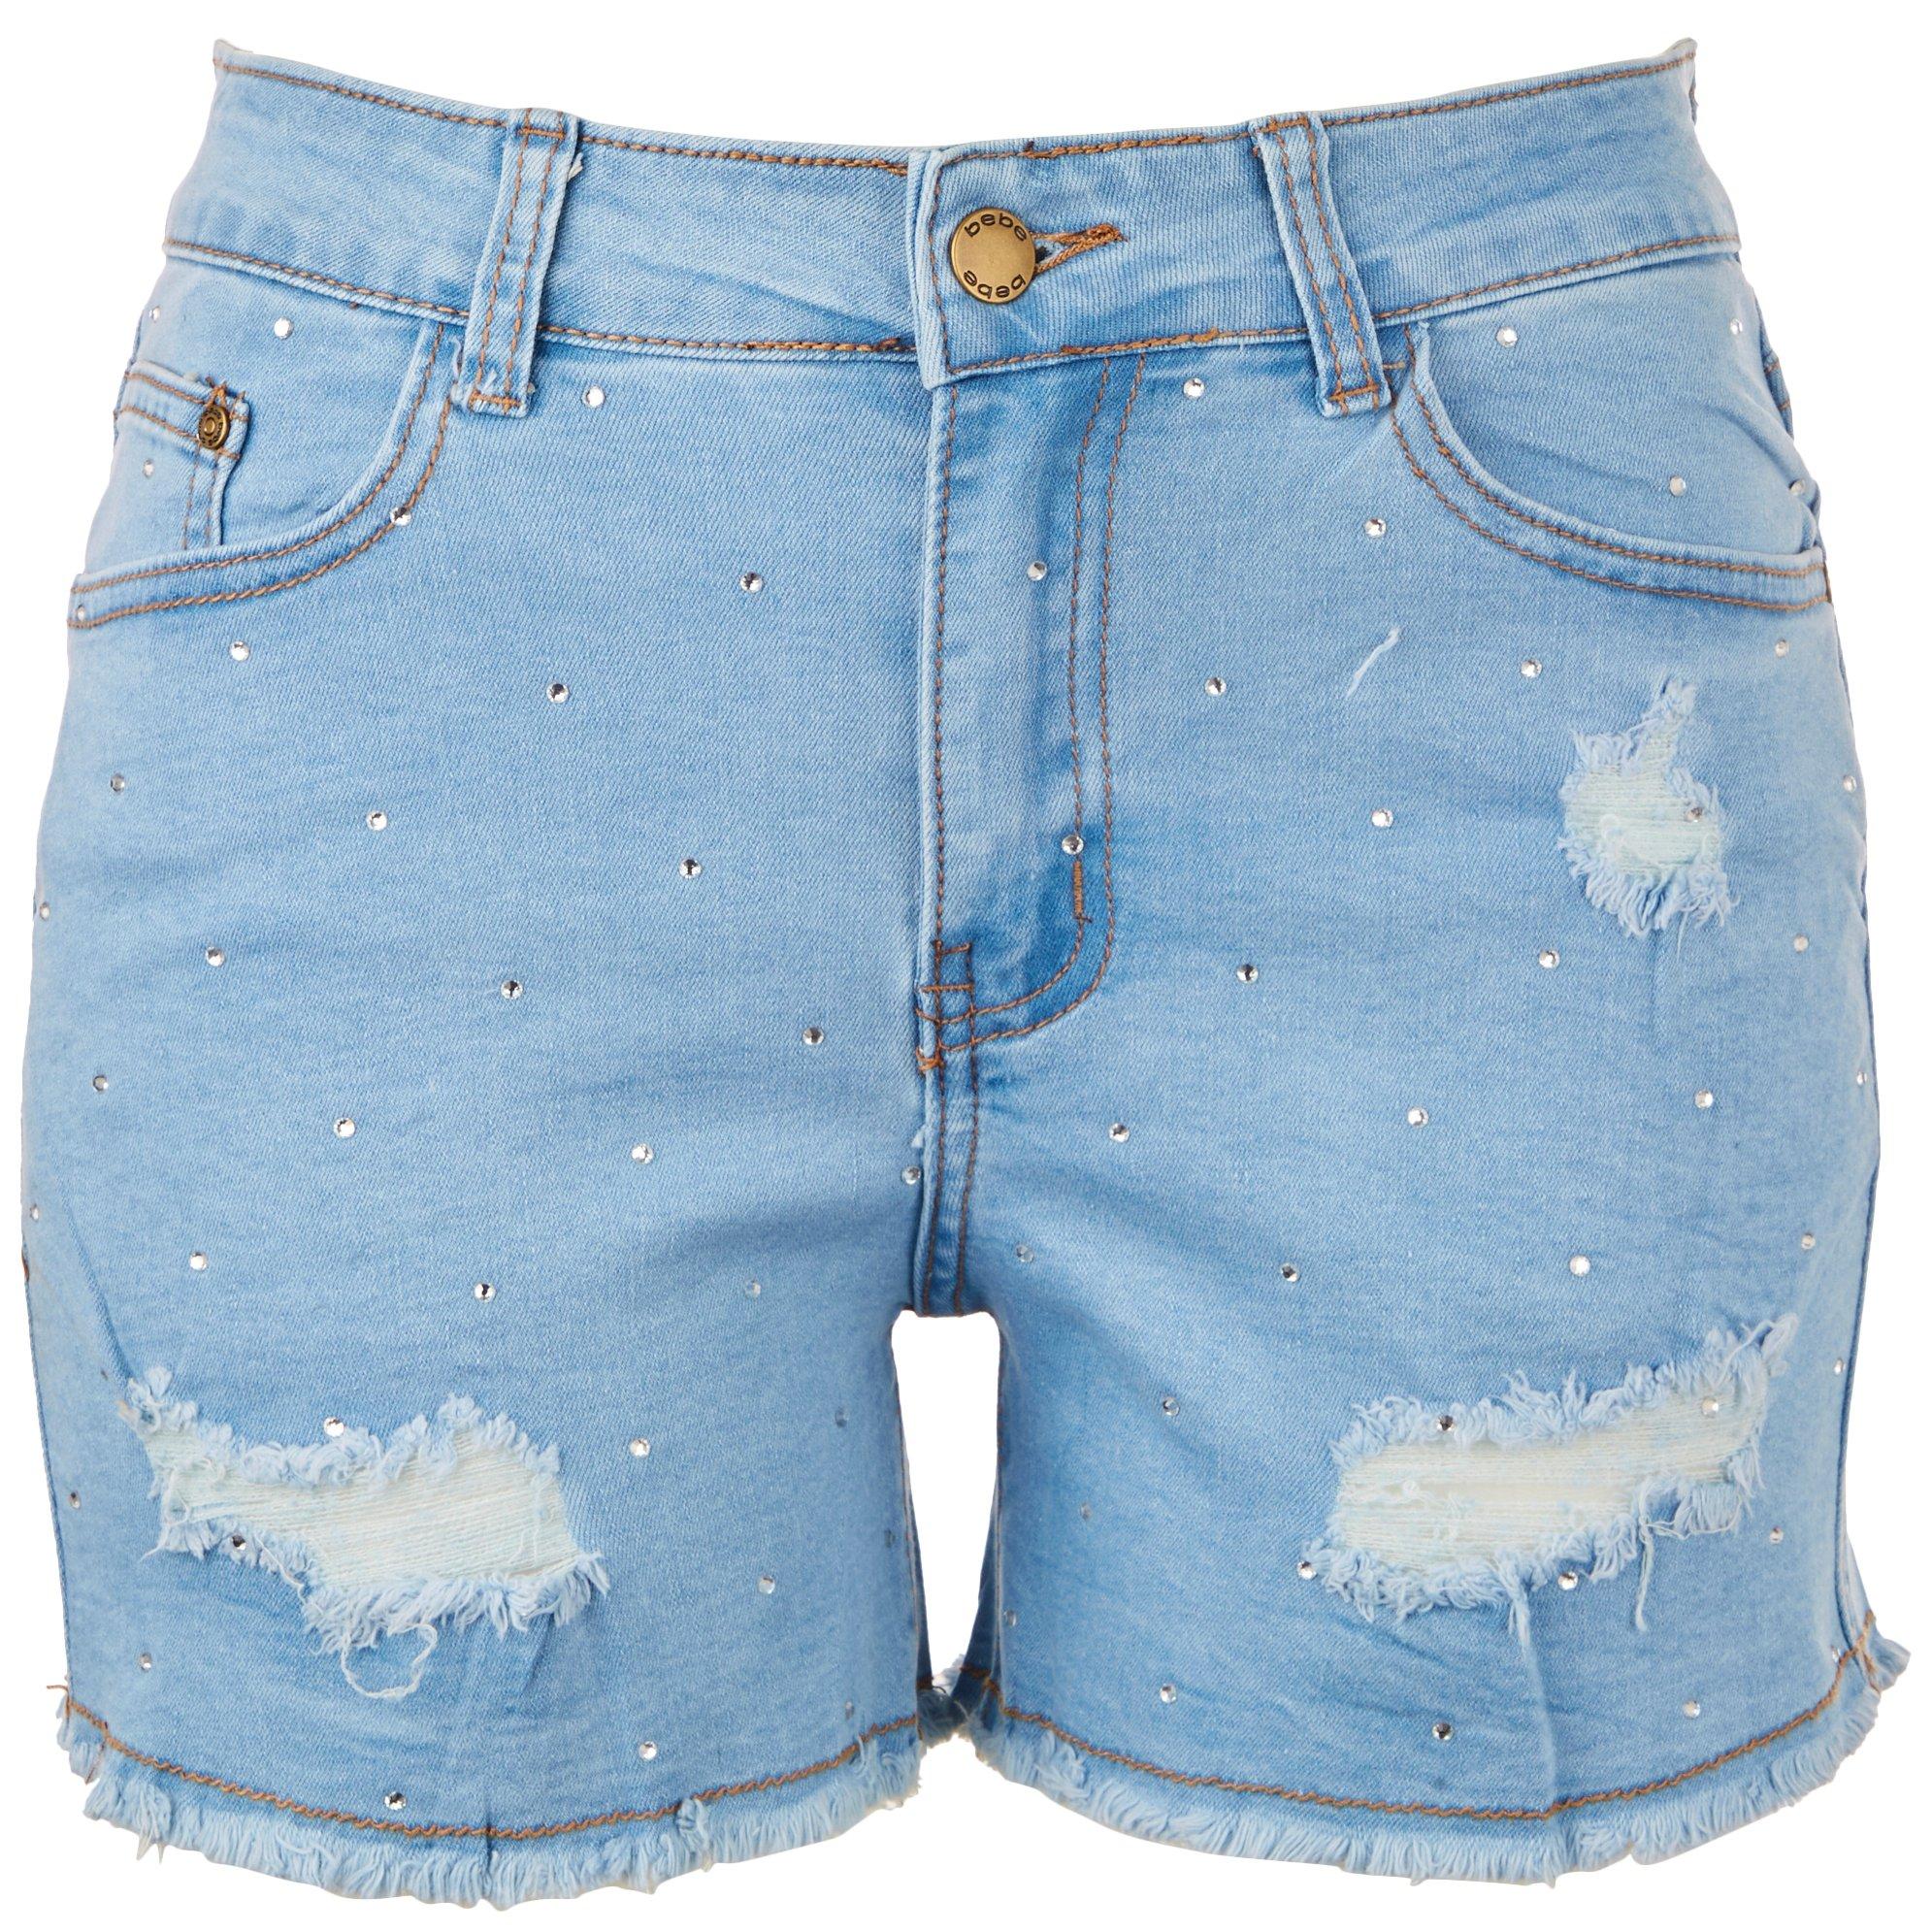 Juniors Embellished Distressed Denim Shorts